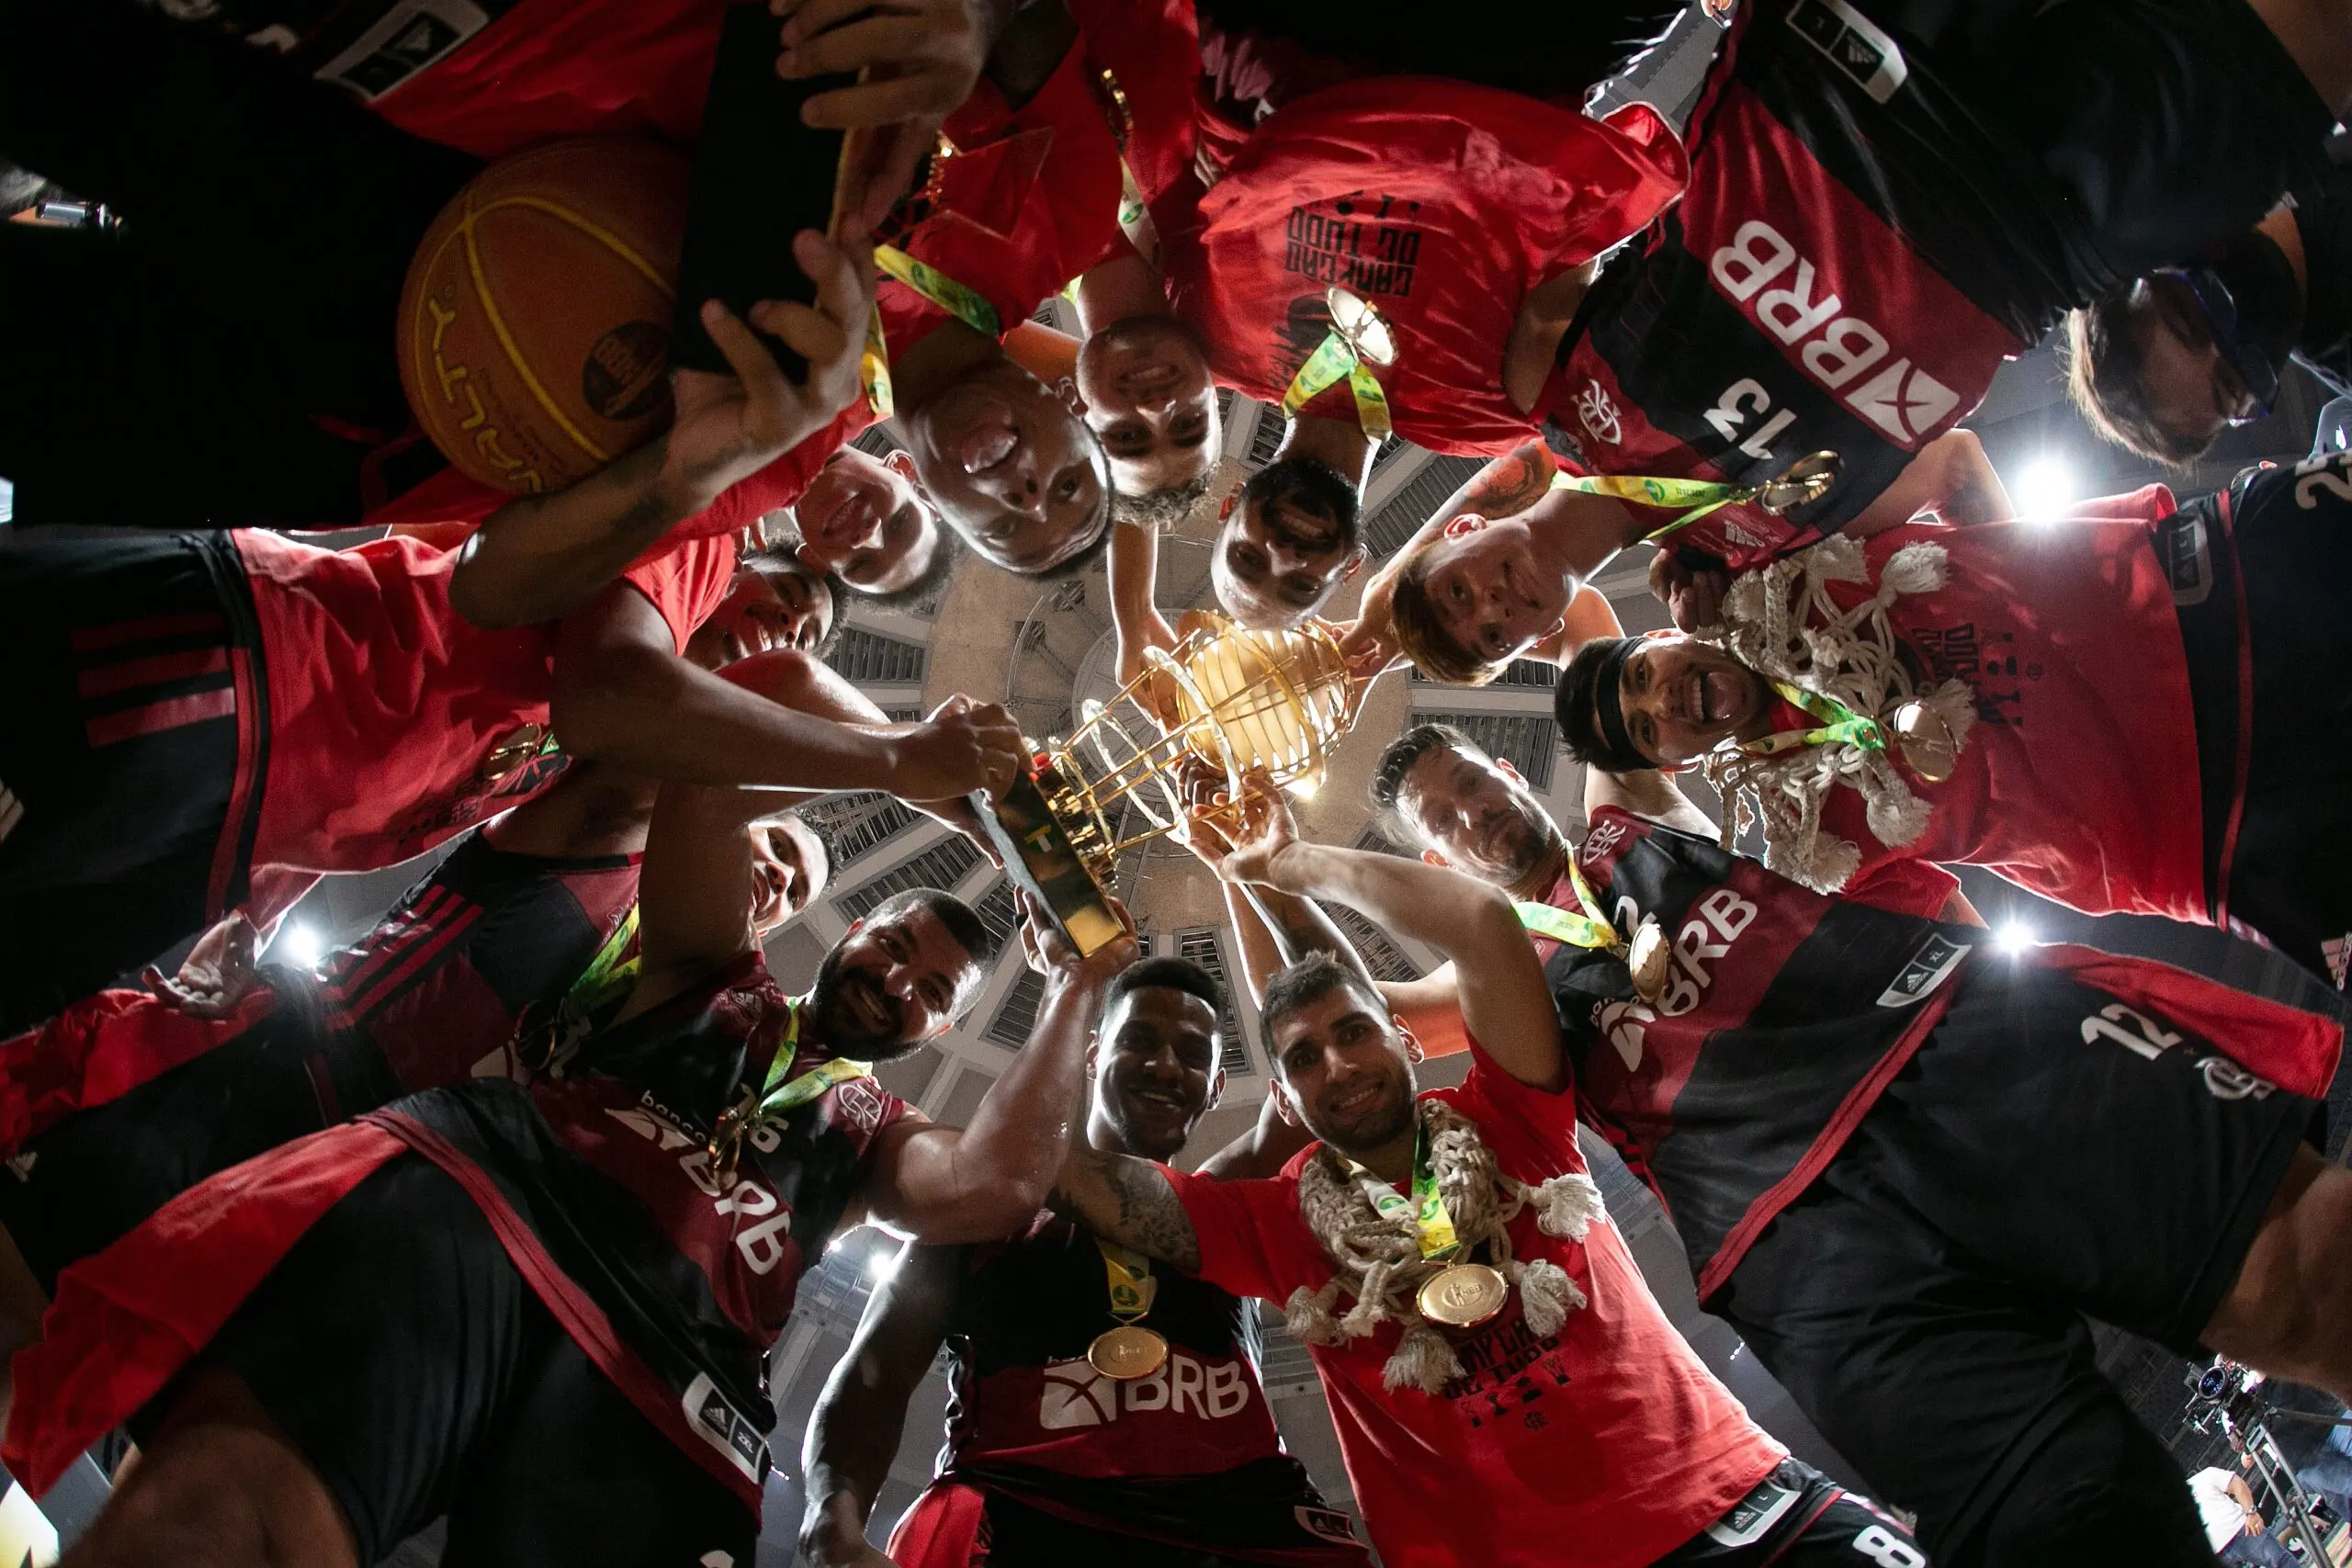 NBB: Flamengo vence São Paulo no primeiro jogo da final